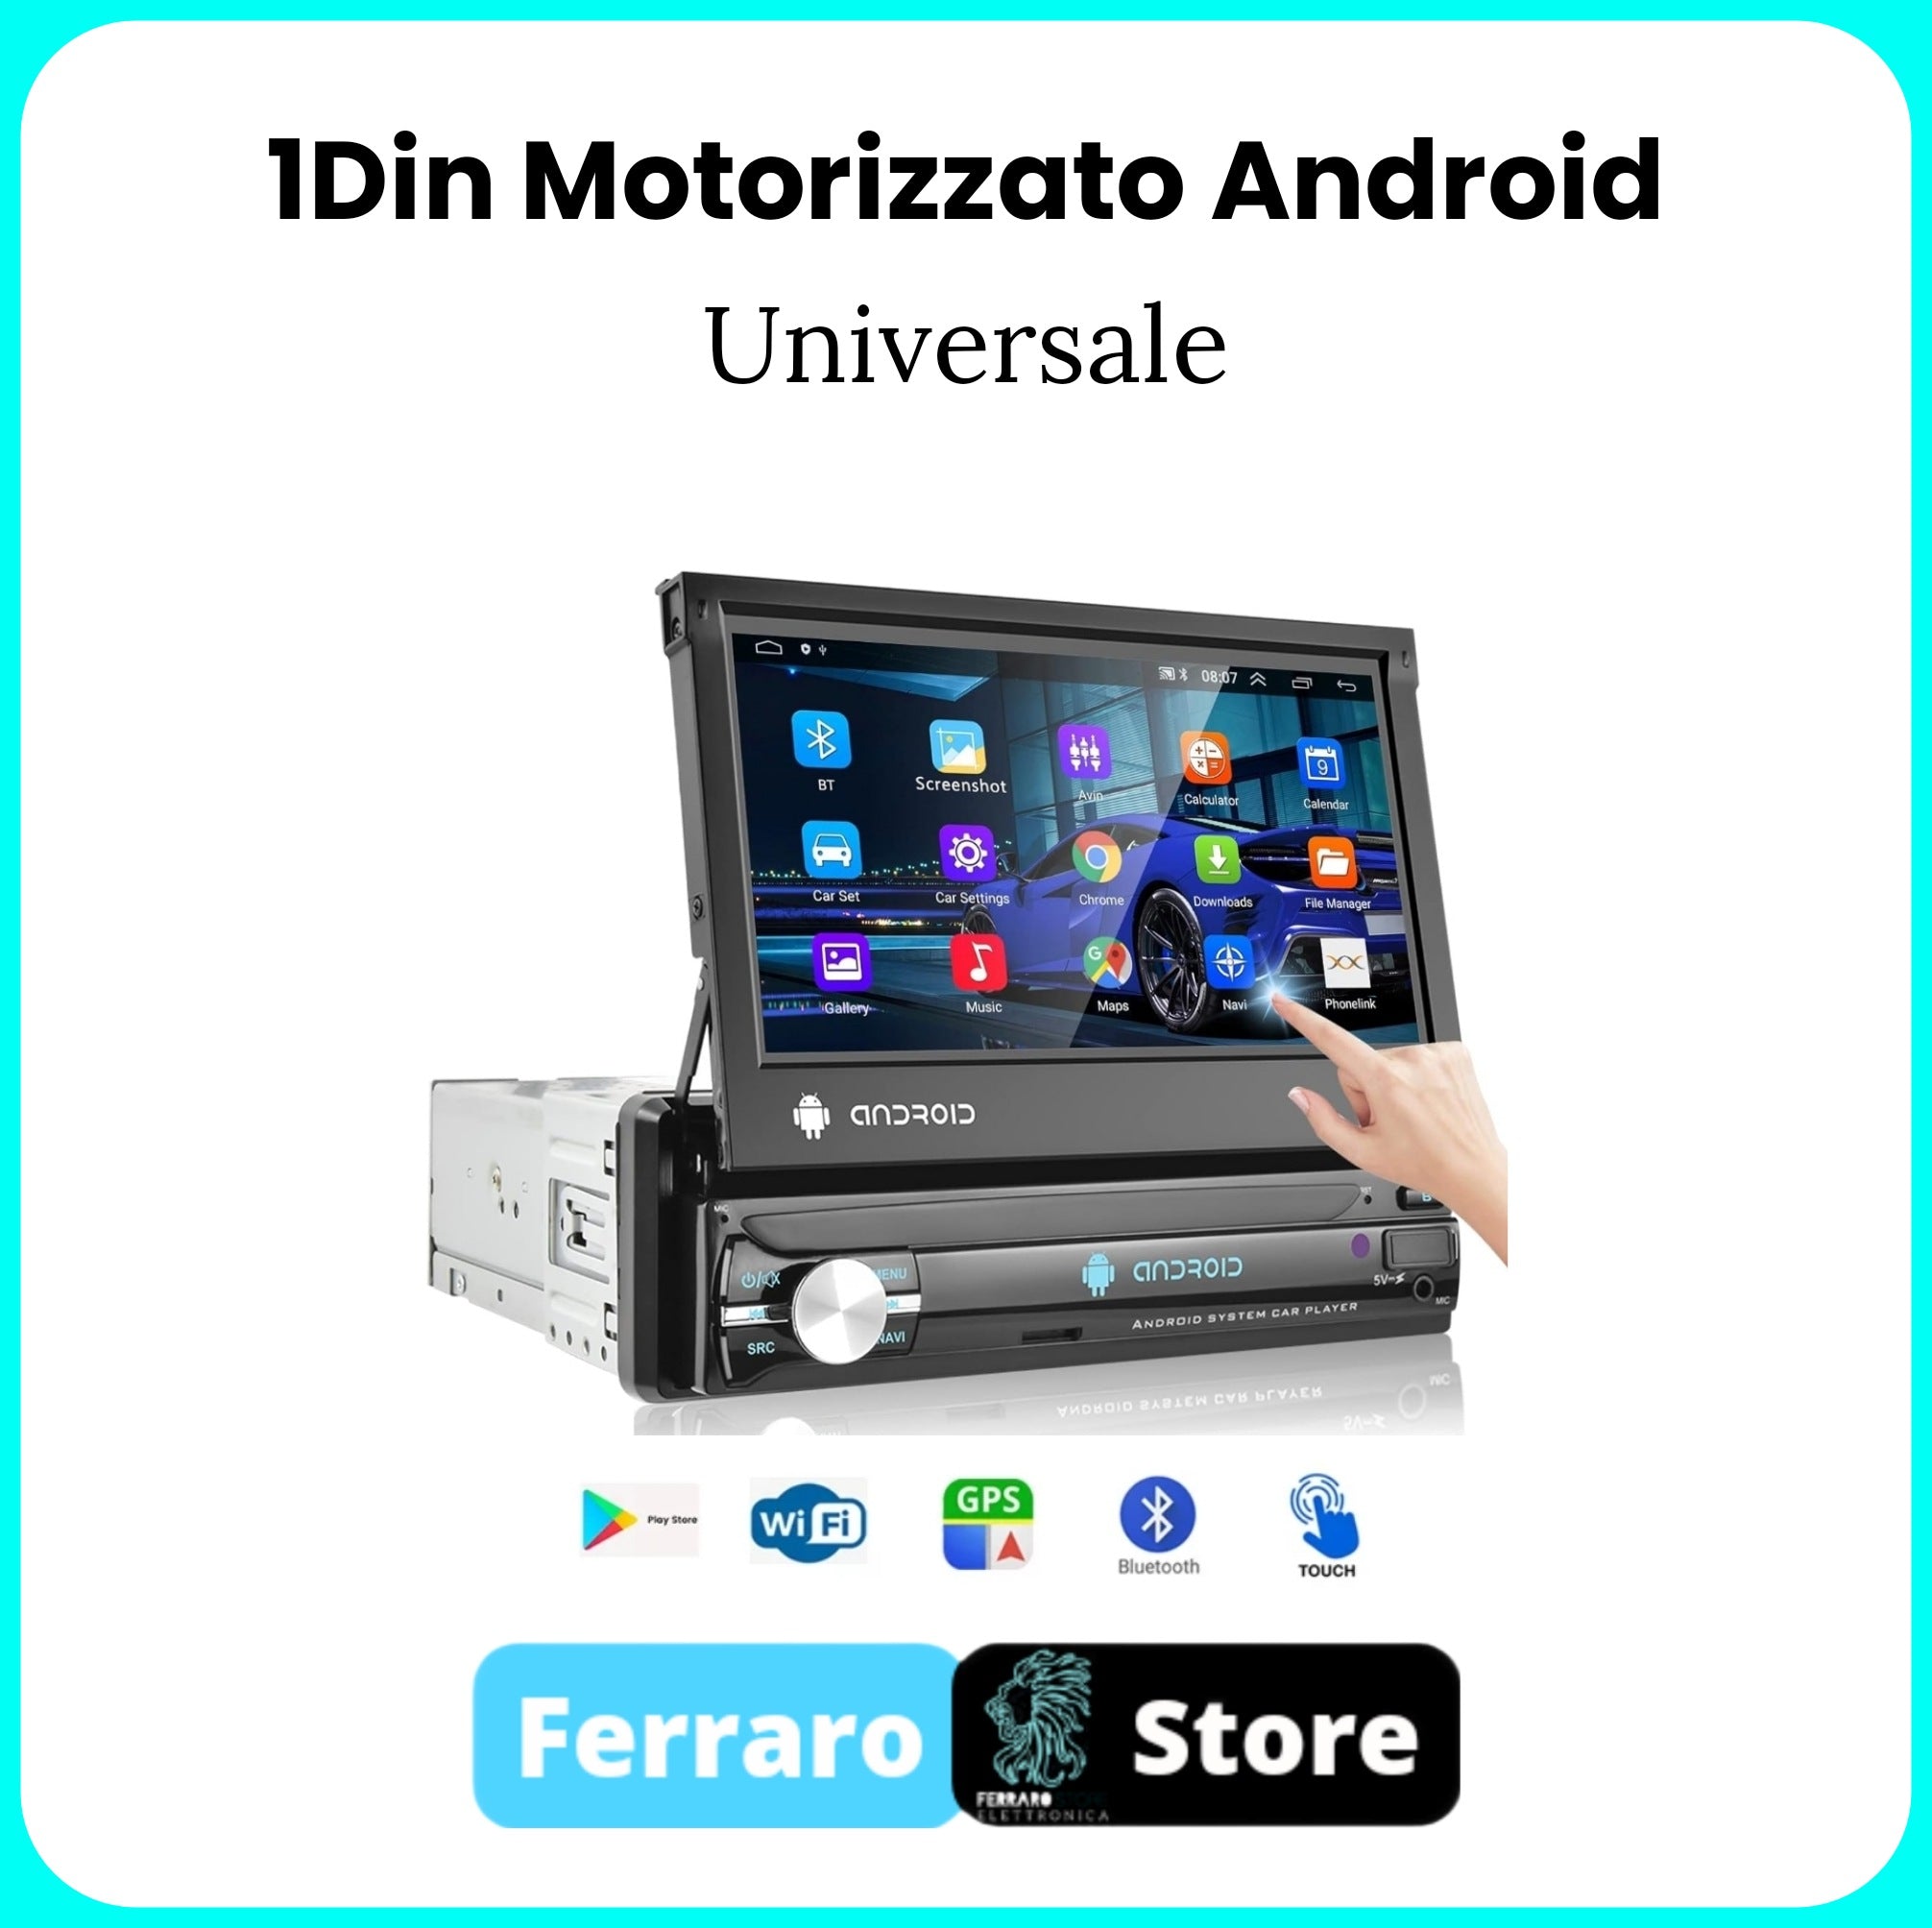 Autoradio motorisé UNIVERSEL [ANDROID] - 1 Din, stéréo avec GPS, WiFi, radio, Bluetooth avec écran 7" pouces [Motorisé], avec CAMÉRA ARRIÈRE GRATUITE, FM / SWC / Mirror Link pour Android / IOS.